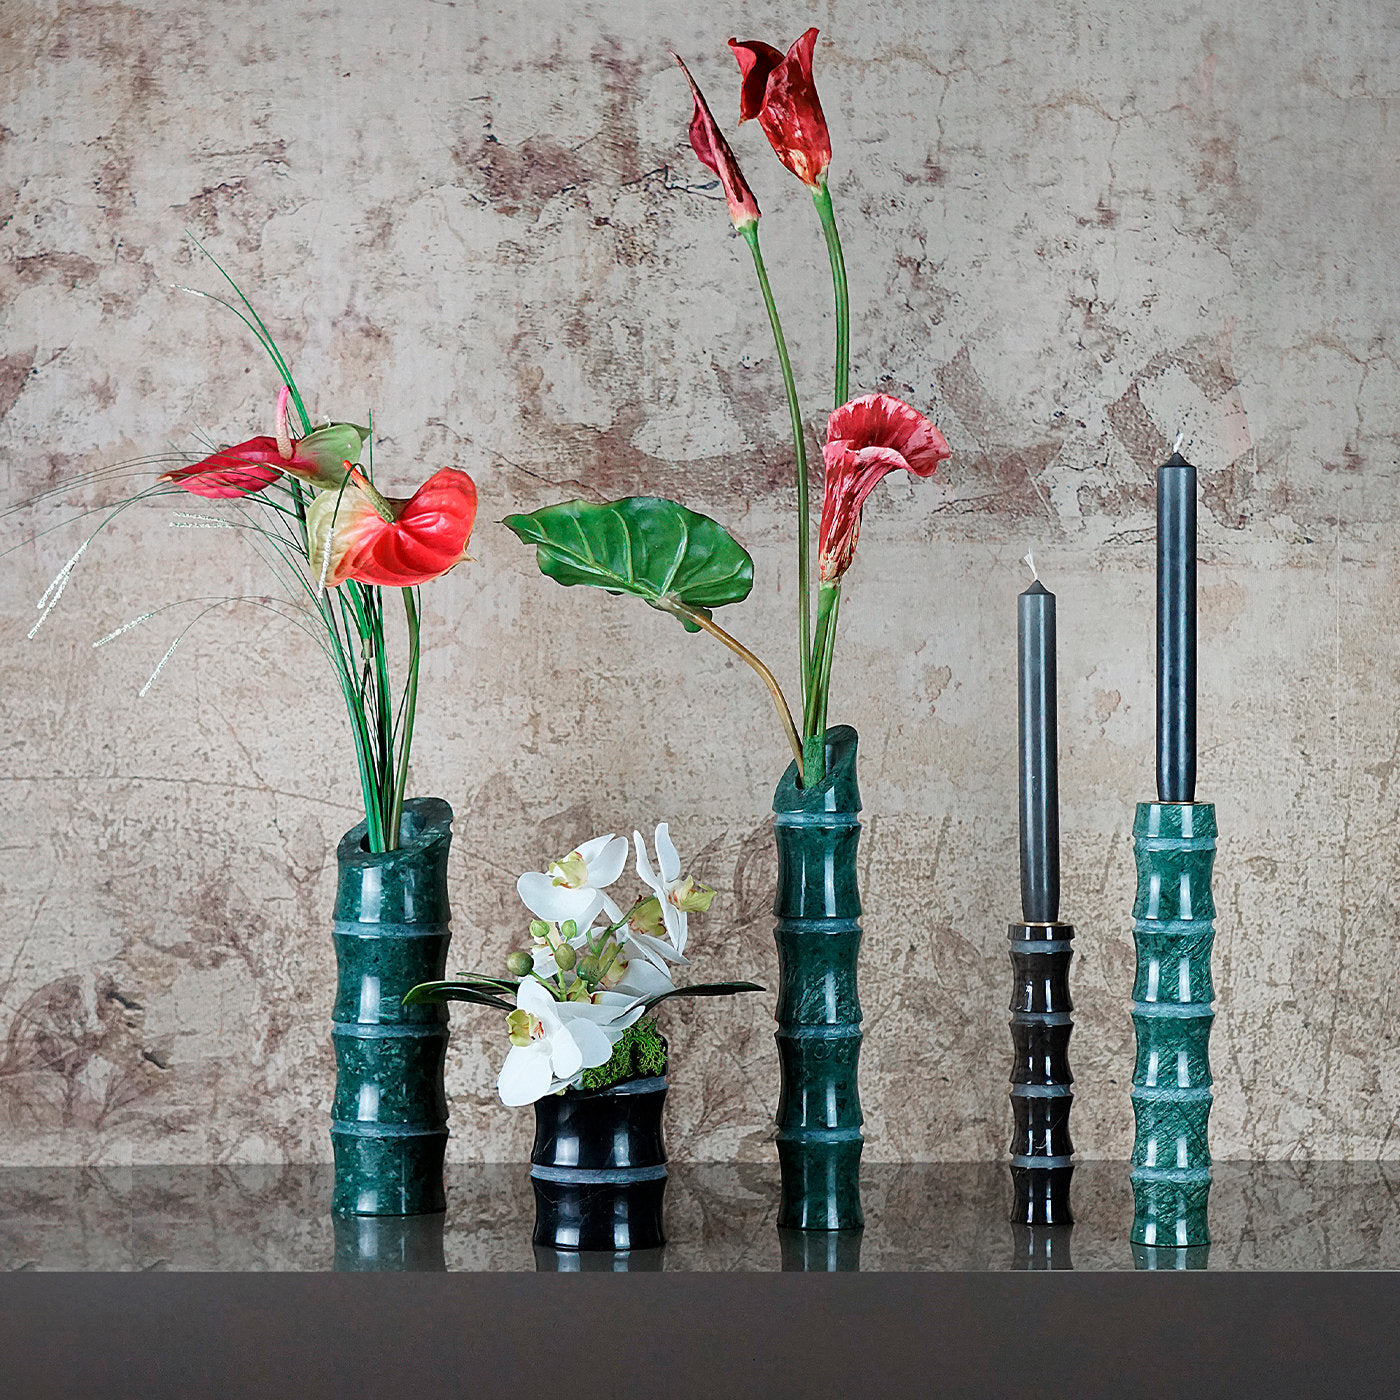 Kadomatsu Medium Green Guatemala Vase by Michele Chiossi - Alternative view 4